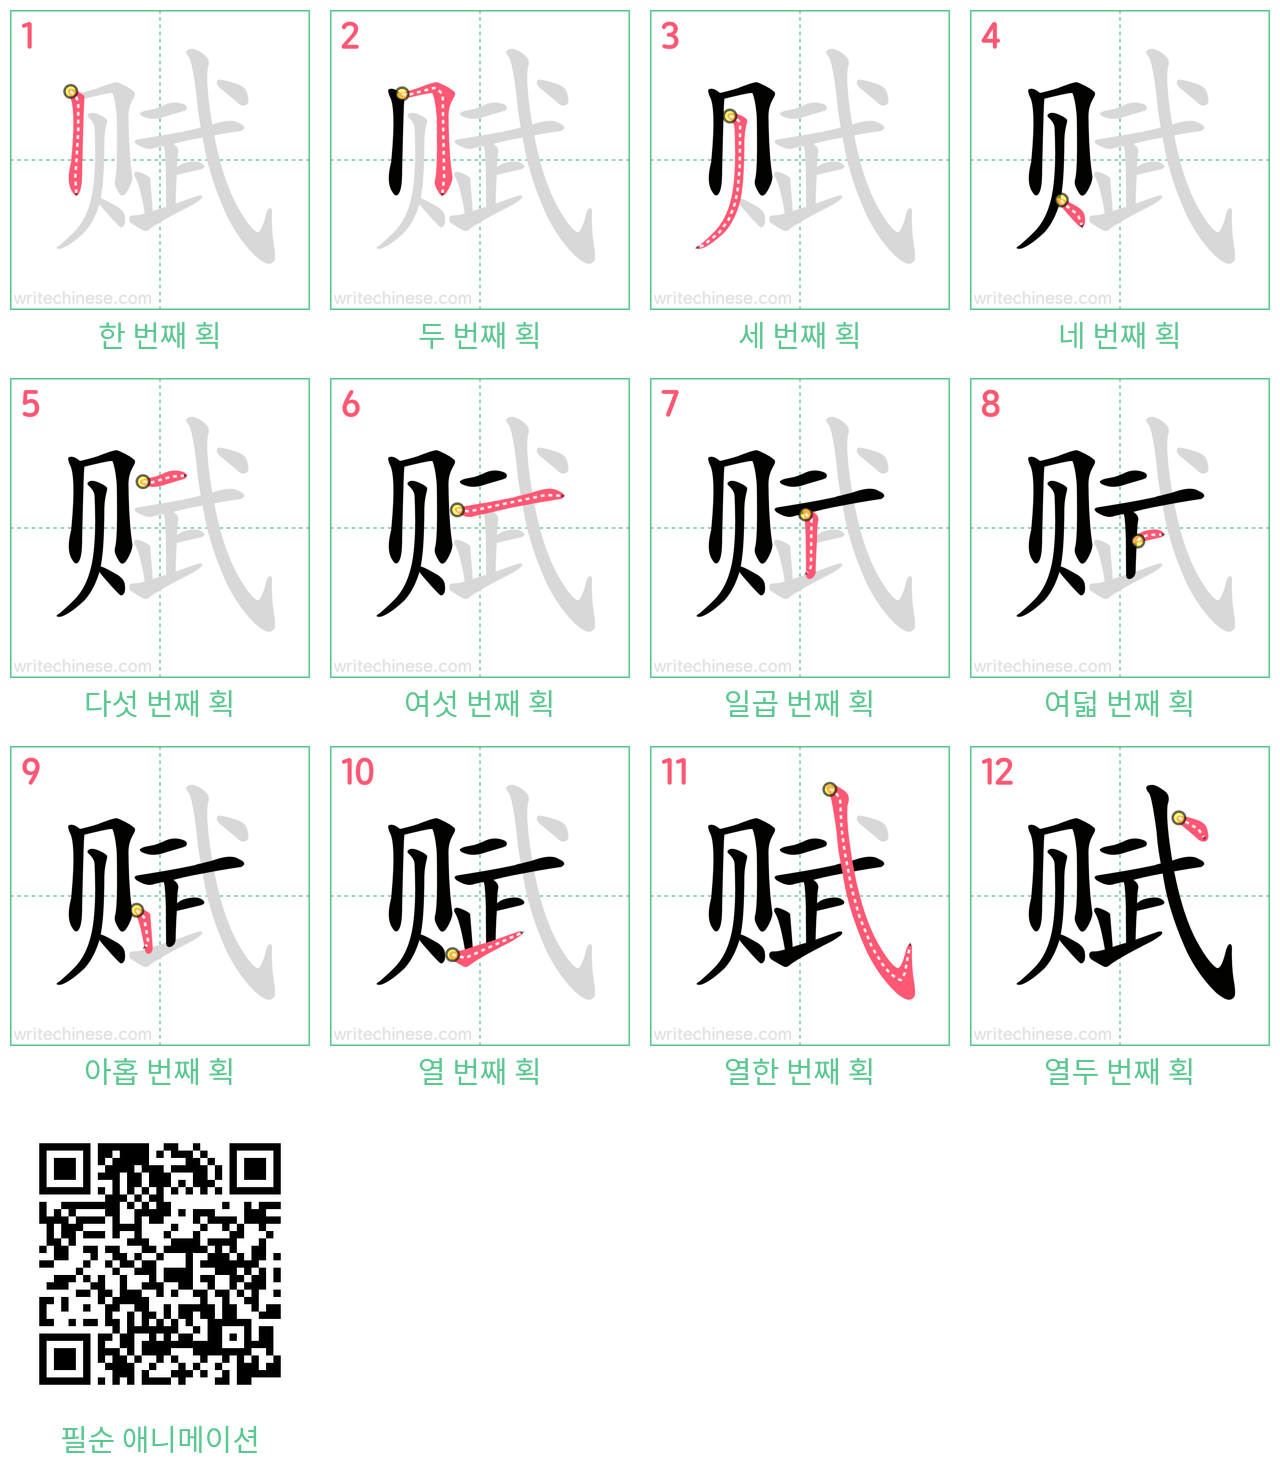 赋 step-by-step stroke order diagrams